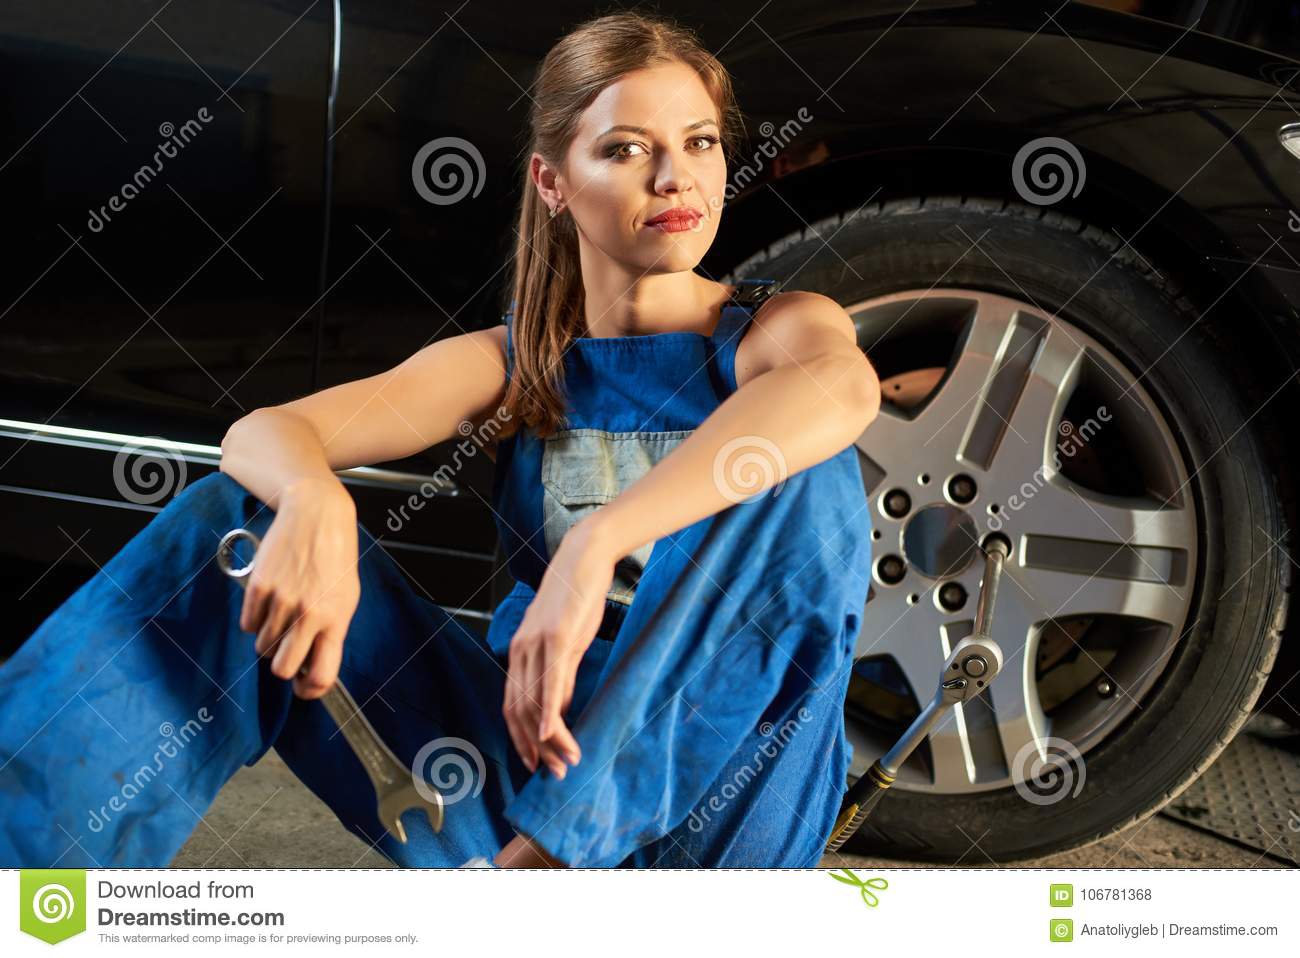 female-mechanic-blue-suit-sits-near-tire-holding-wrench-female-mechanic-sits-near-tire-holding...jpg